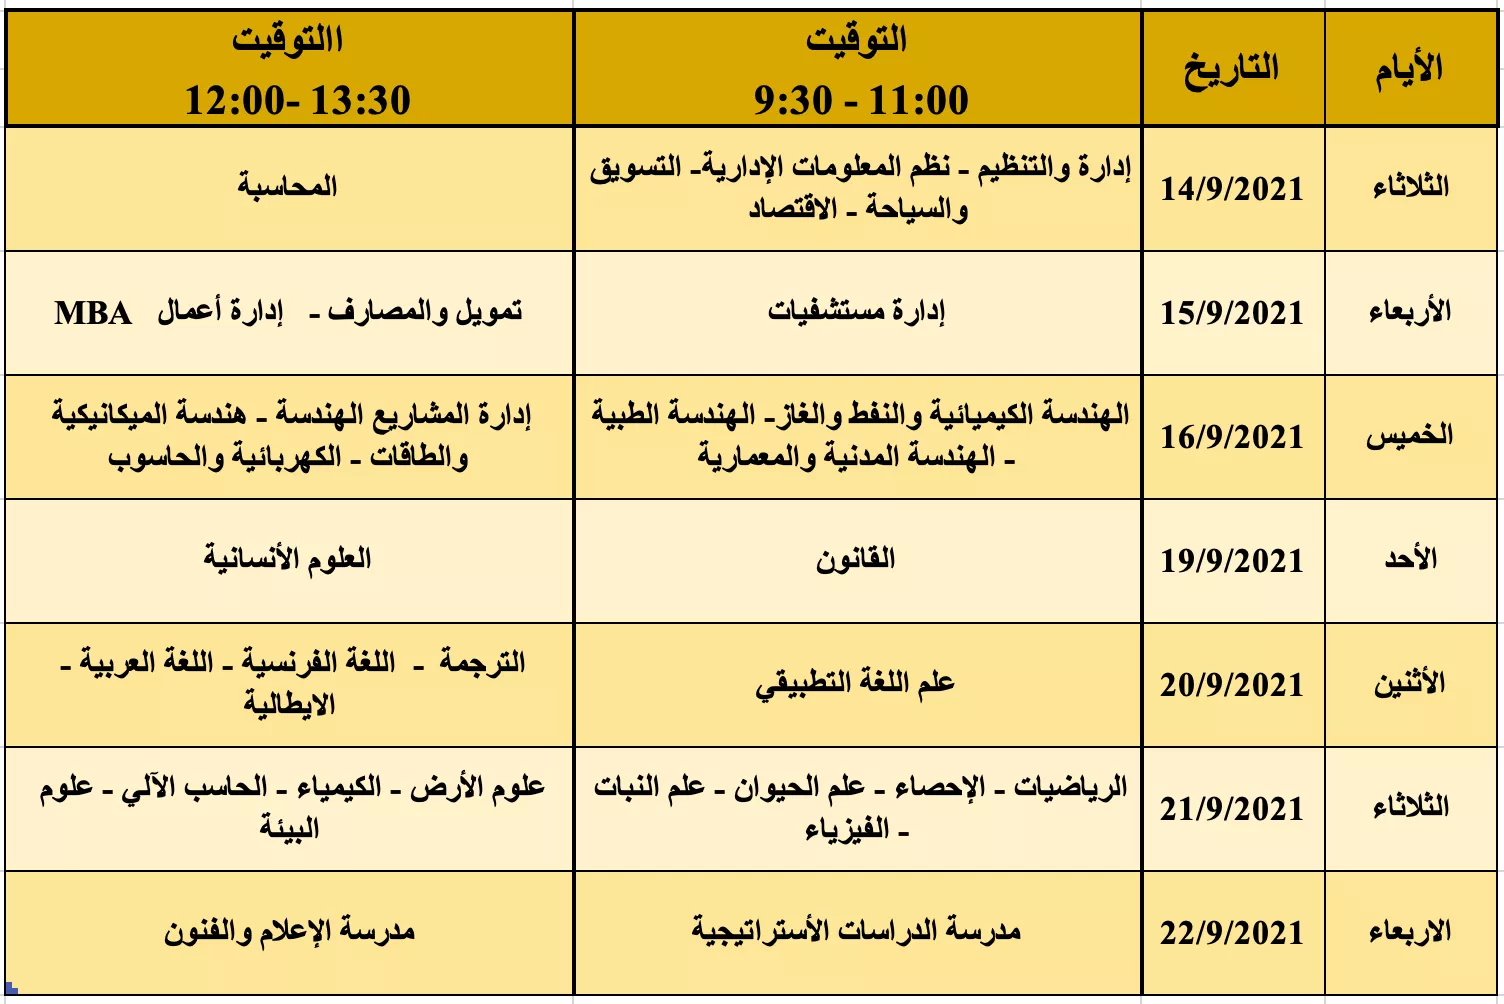 مواعيد إجراء امتحانات المفاضلة للطلبة الجدد المتقدمين للدراسة بالأكاديمية الليبية للعام الدراسي 2021-2022م